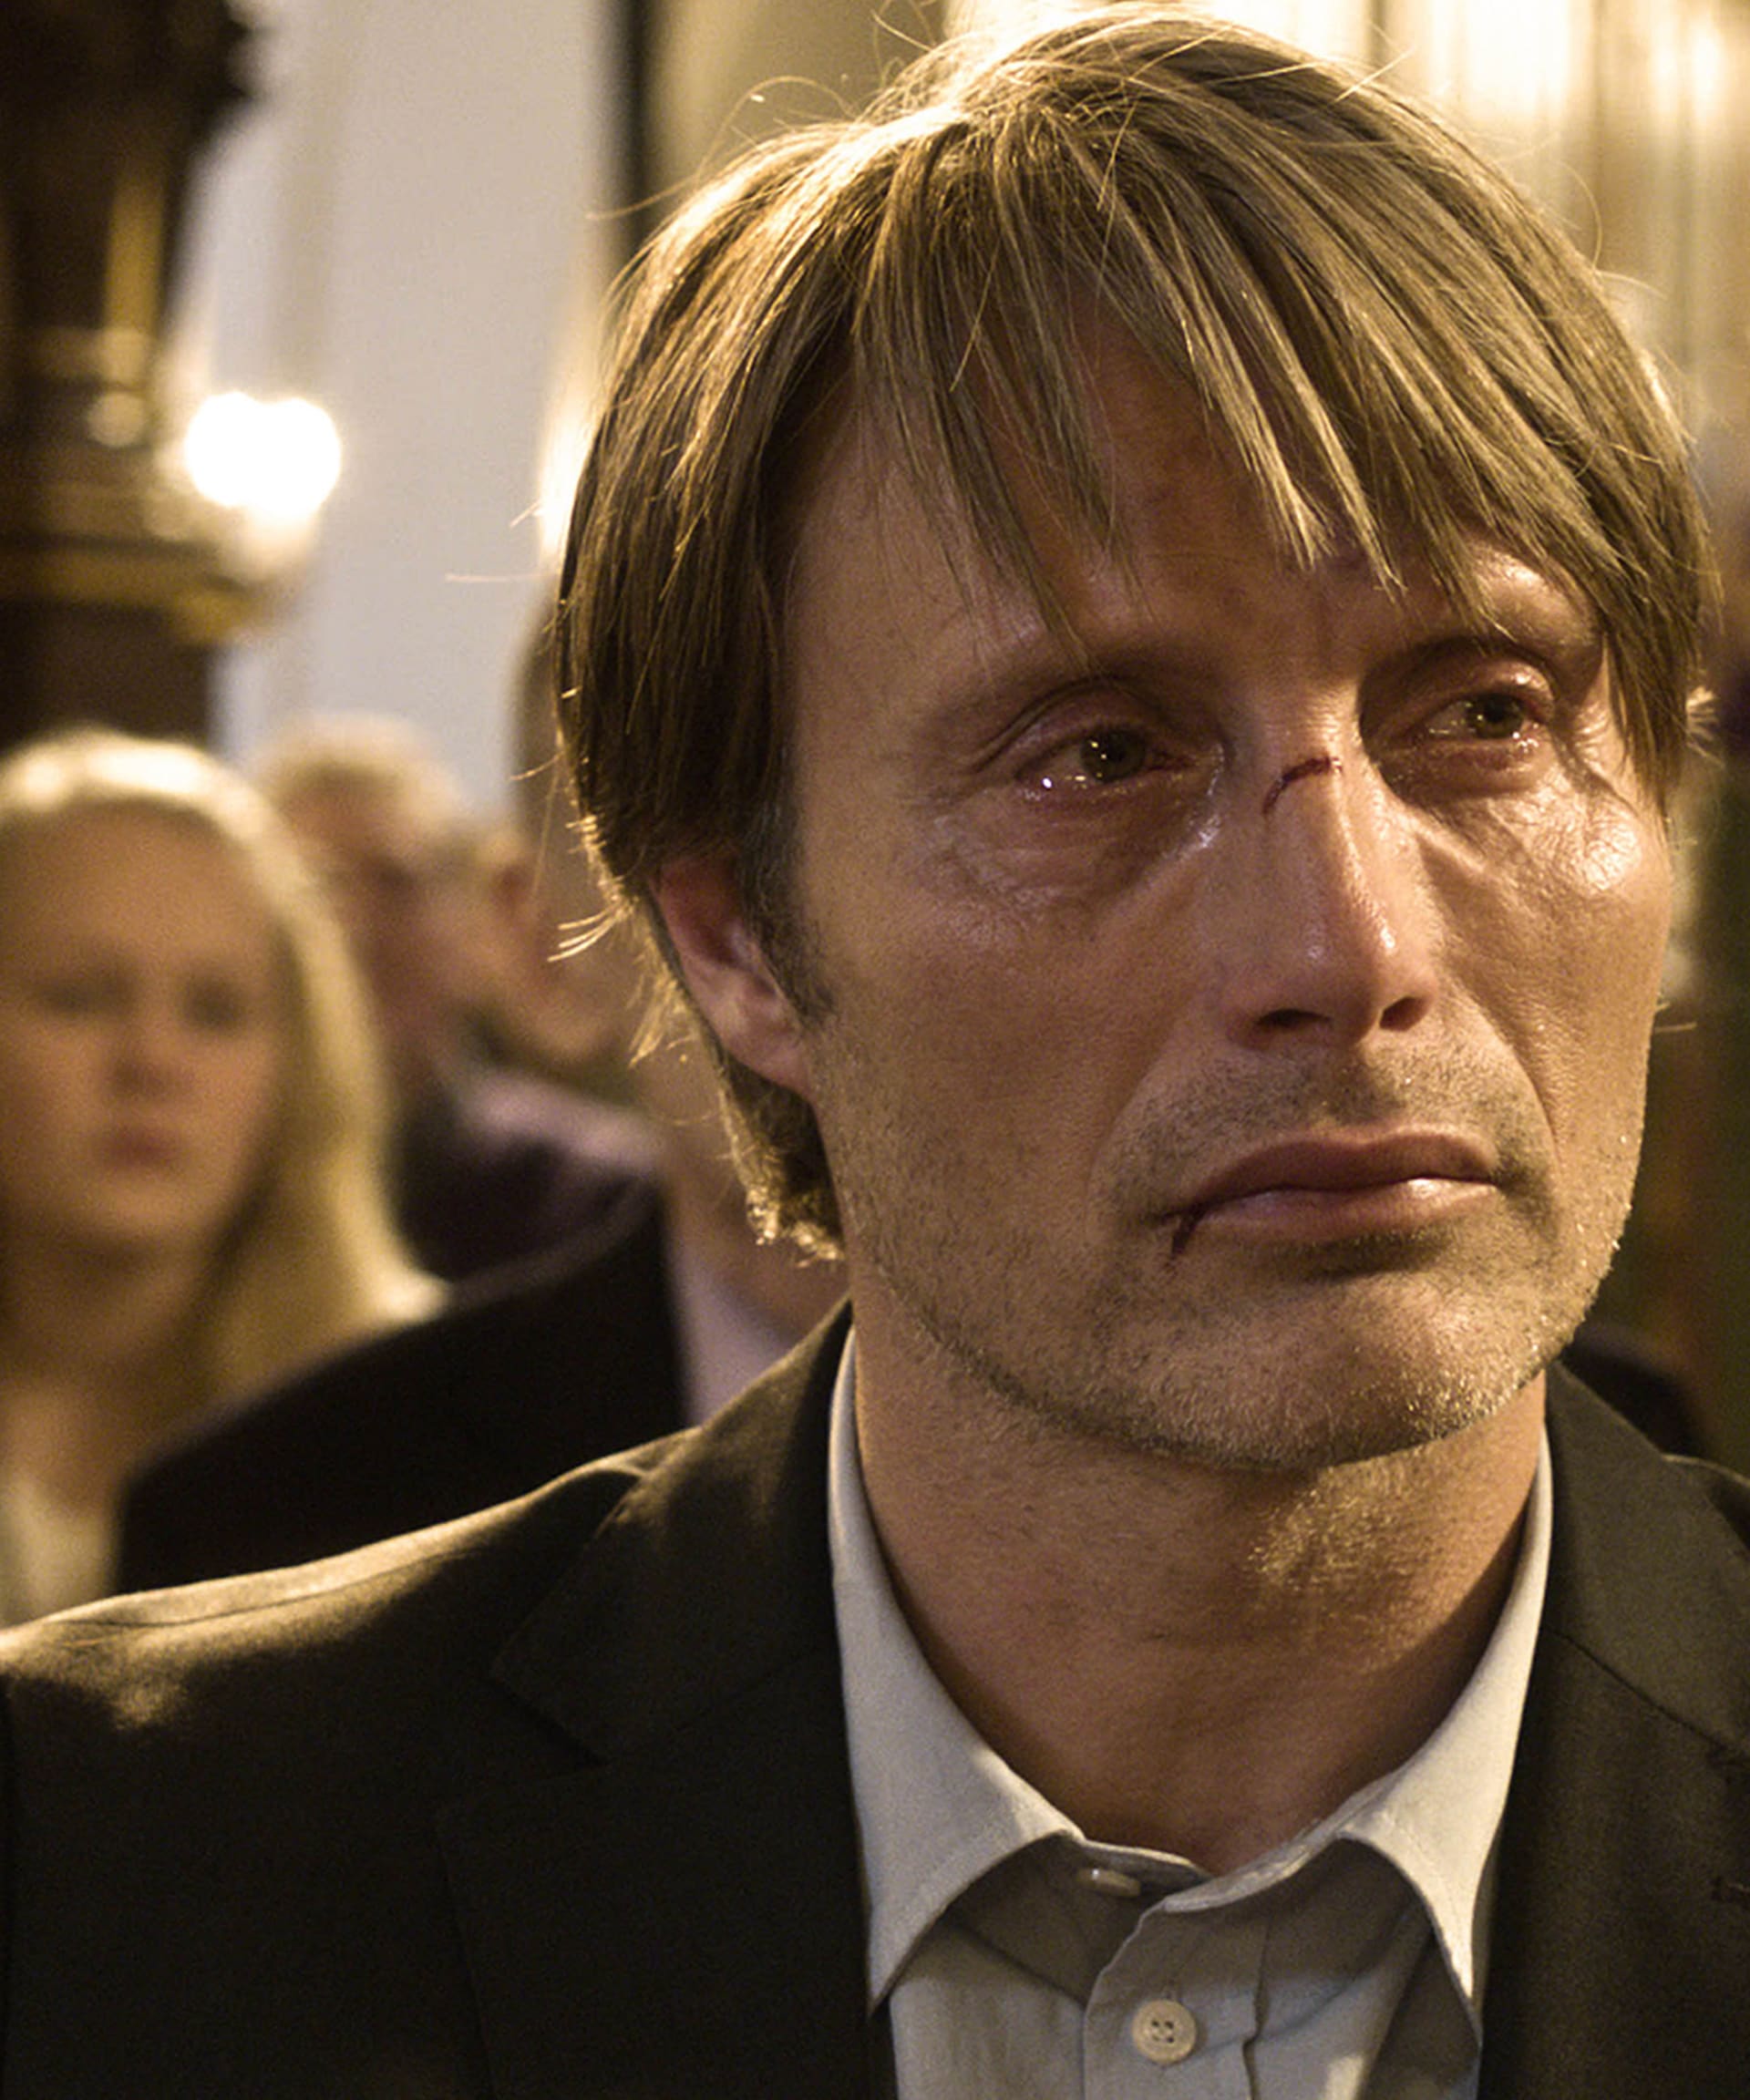 Za hlavní roli ve filmu Hon získal Mikkelsen na festivalu v Cannes cenu pro nejlepšího herce...